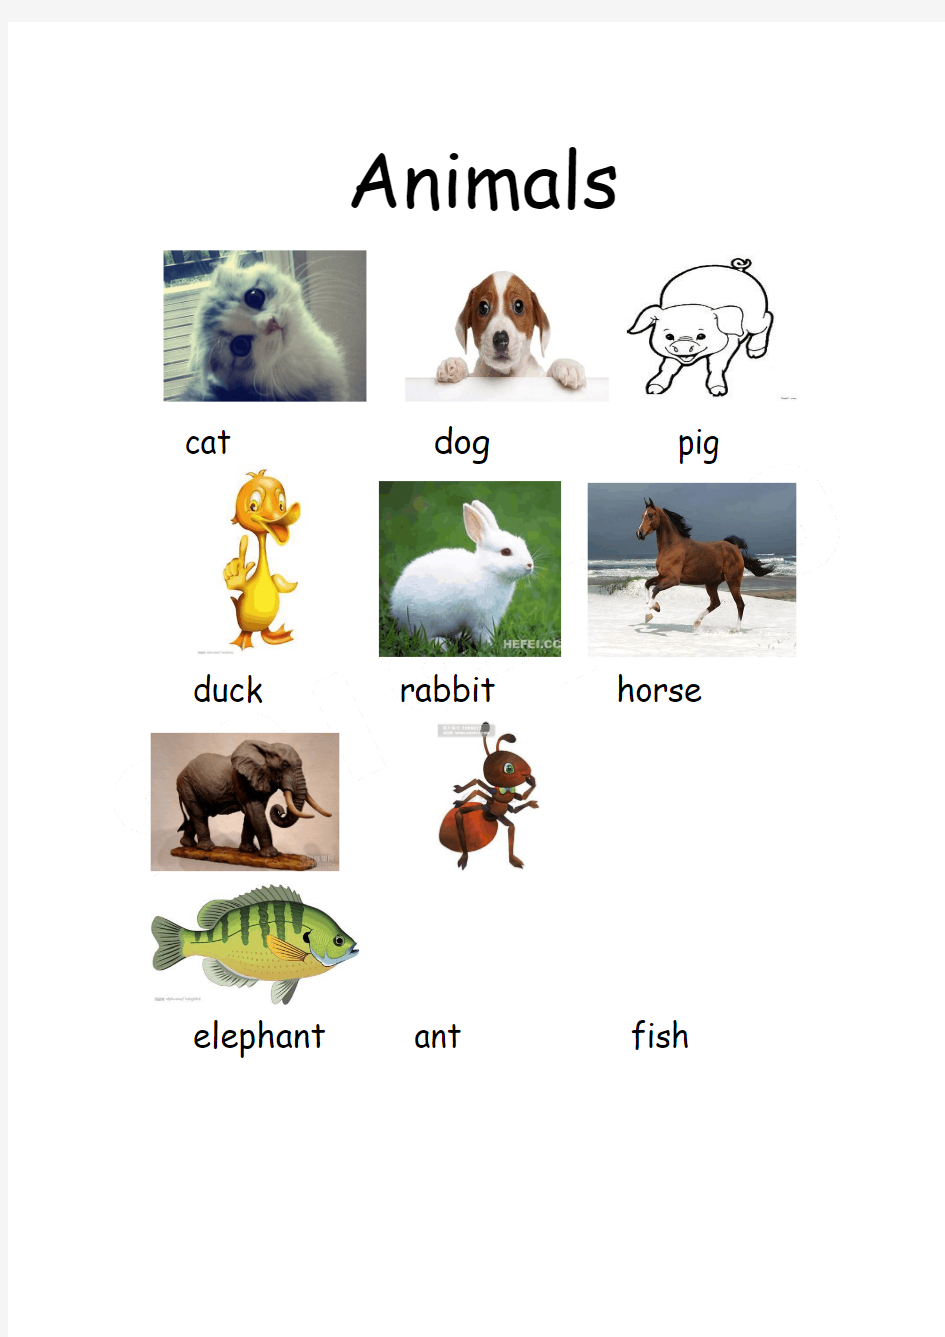 重点小学英语动物类单词大全(配图)